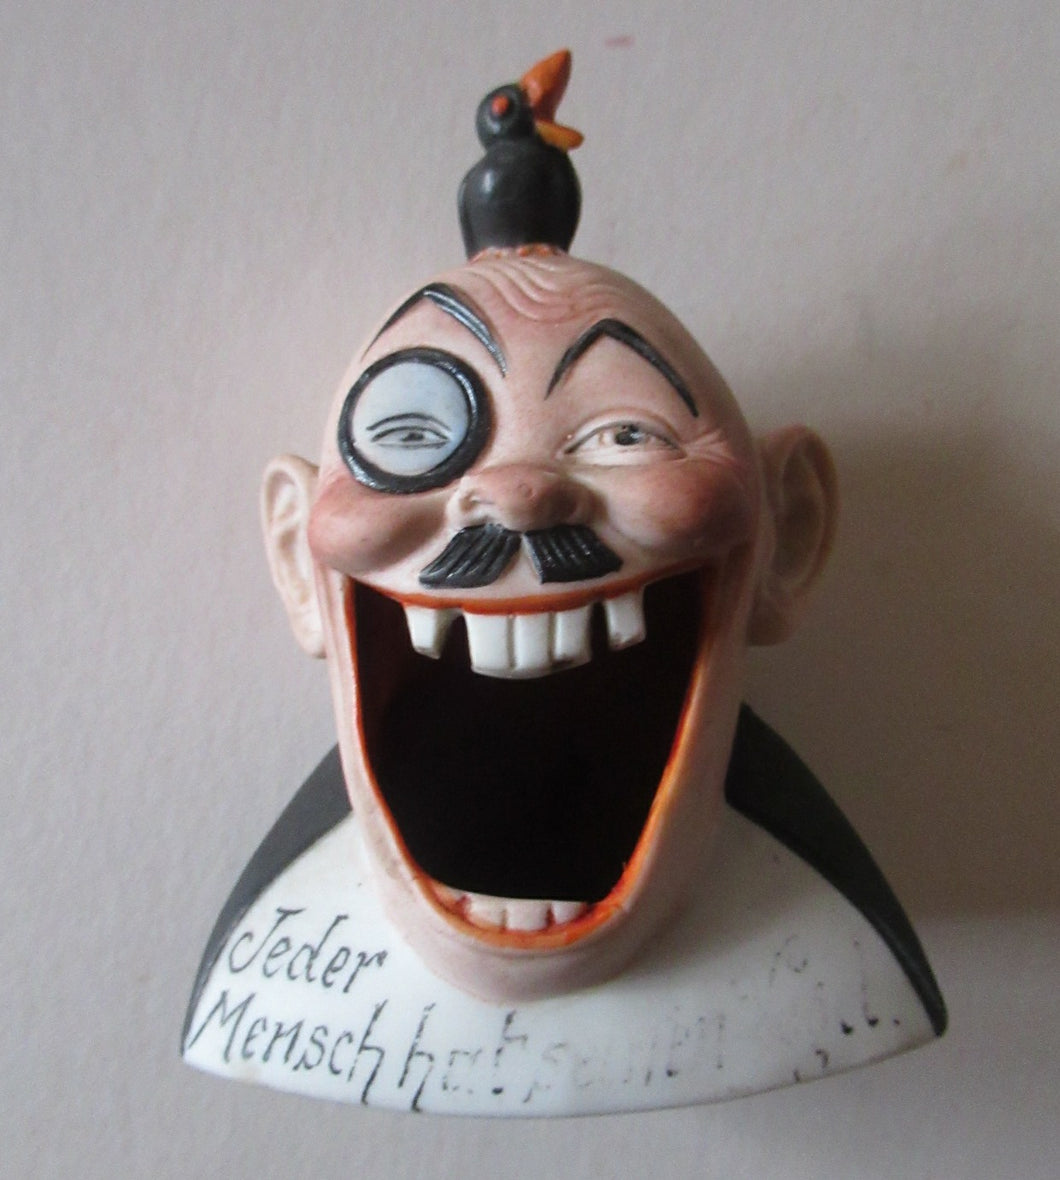 RARE MINIATURE Antique Porcelain SMOKING Head Ashtray and Match Holder by Schafer & Vater. Jeder Mensch hat seinen Vogel